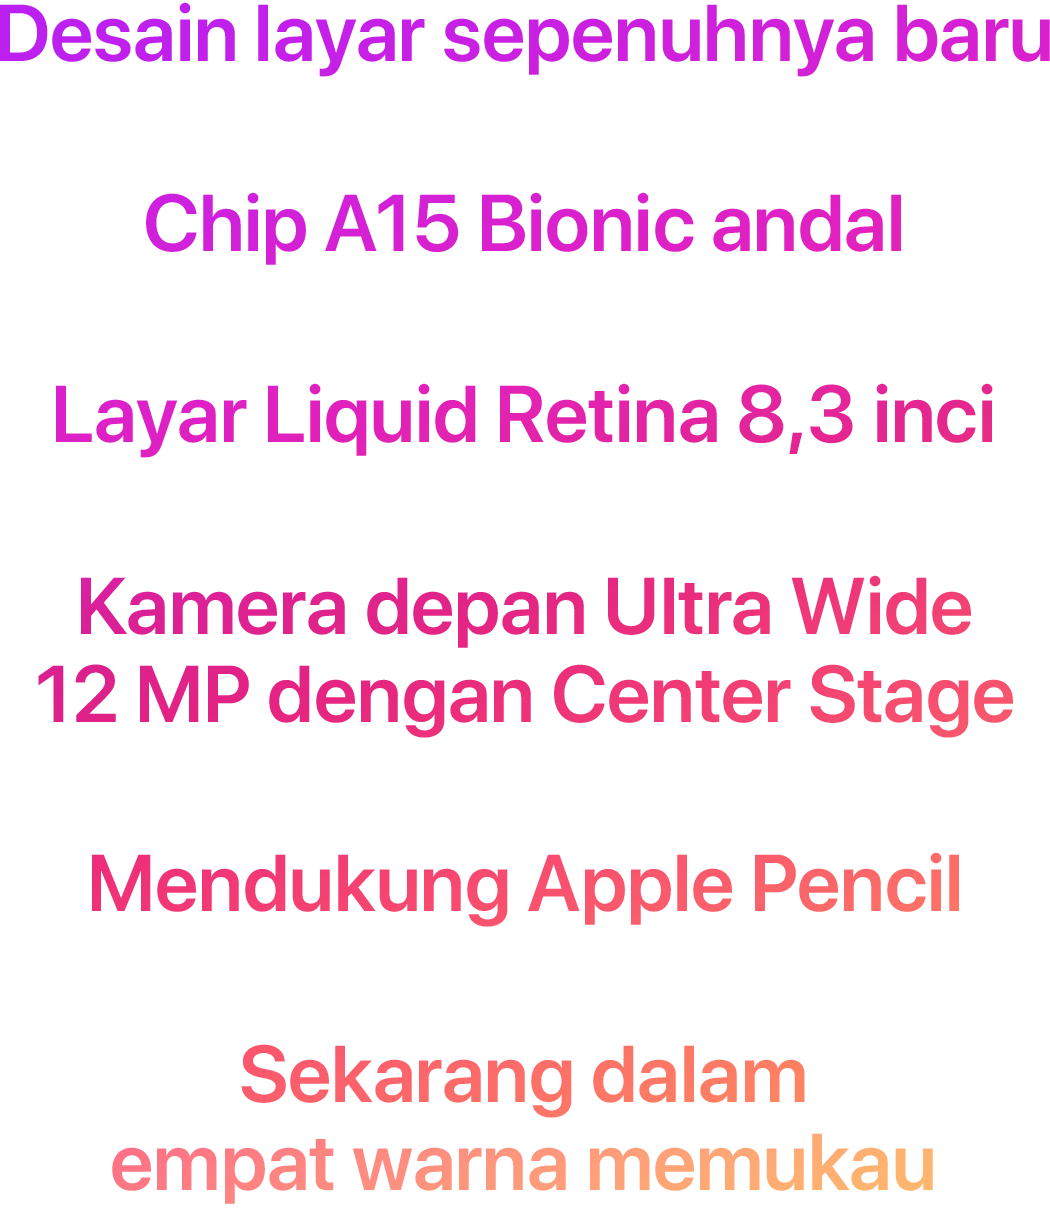 Desain layar sepenuhnya baru  Chip A15 Bionic andal  Layar Liquid Retina 8,3 inci  Kamera depan Ultra Wide 12 MP dengan Center Stage  Mendukung Apple Pencil  Sekarang dalam empat warna memukau